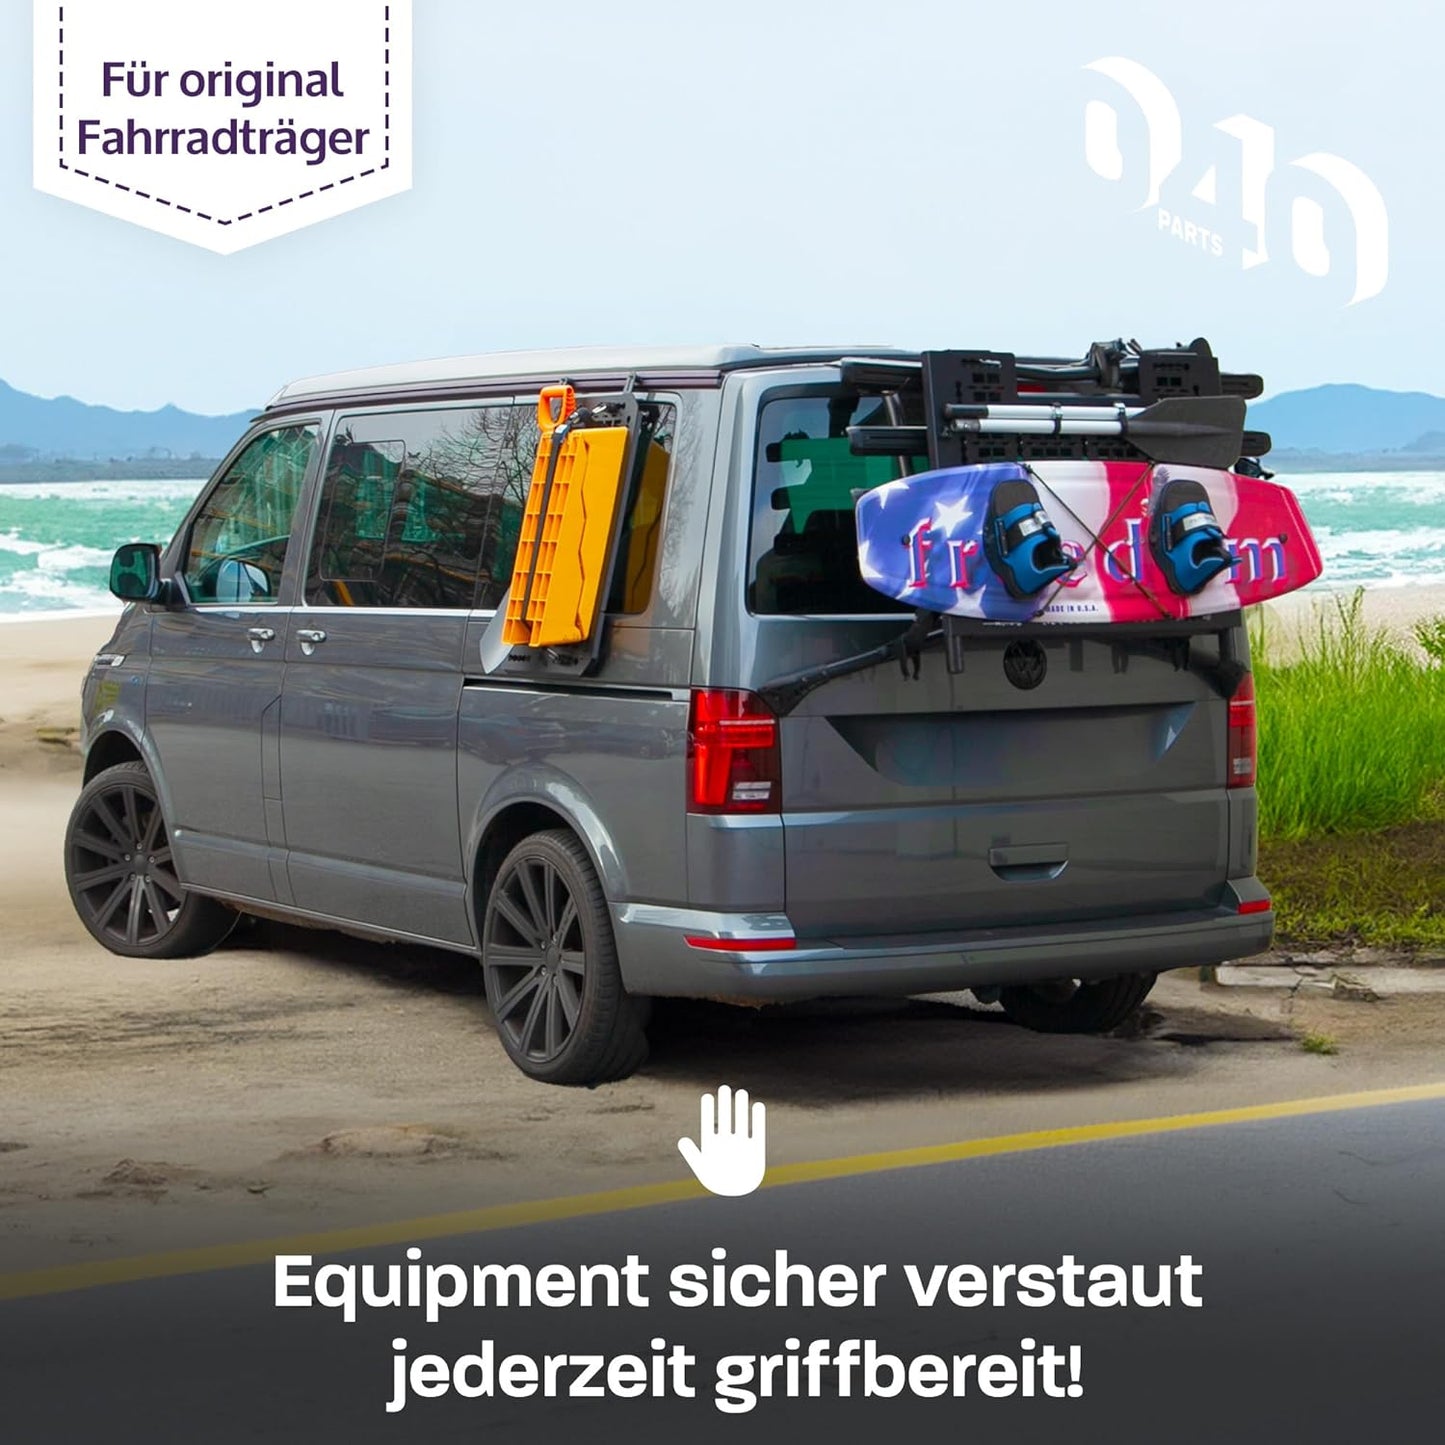 Molle Board für VW T6.1, VW T6 Fahrradträger Gepäckträger Offroad Zubehör – kompatibel mit original VW T6 Heckträger für Camping und Outdoor ausrüstung Kofferraum Organizer